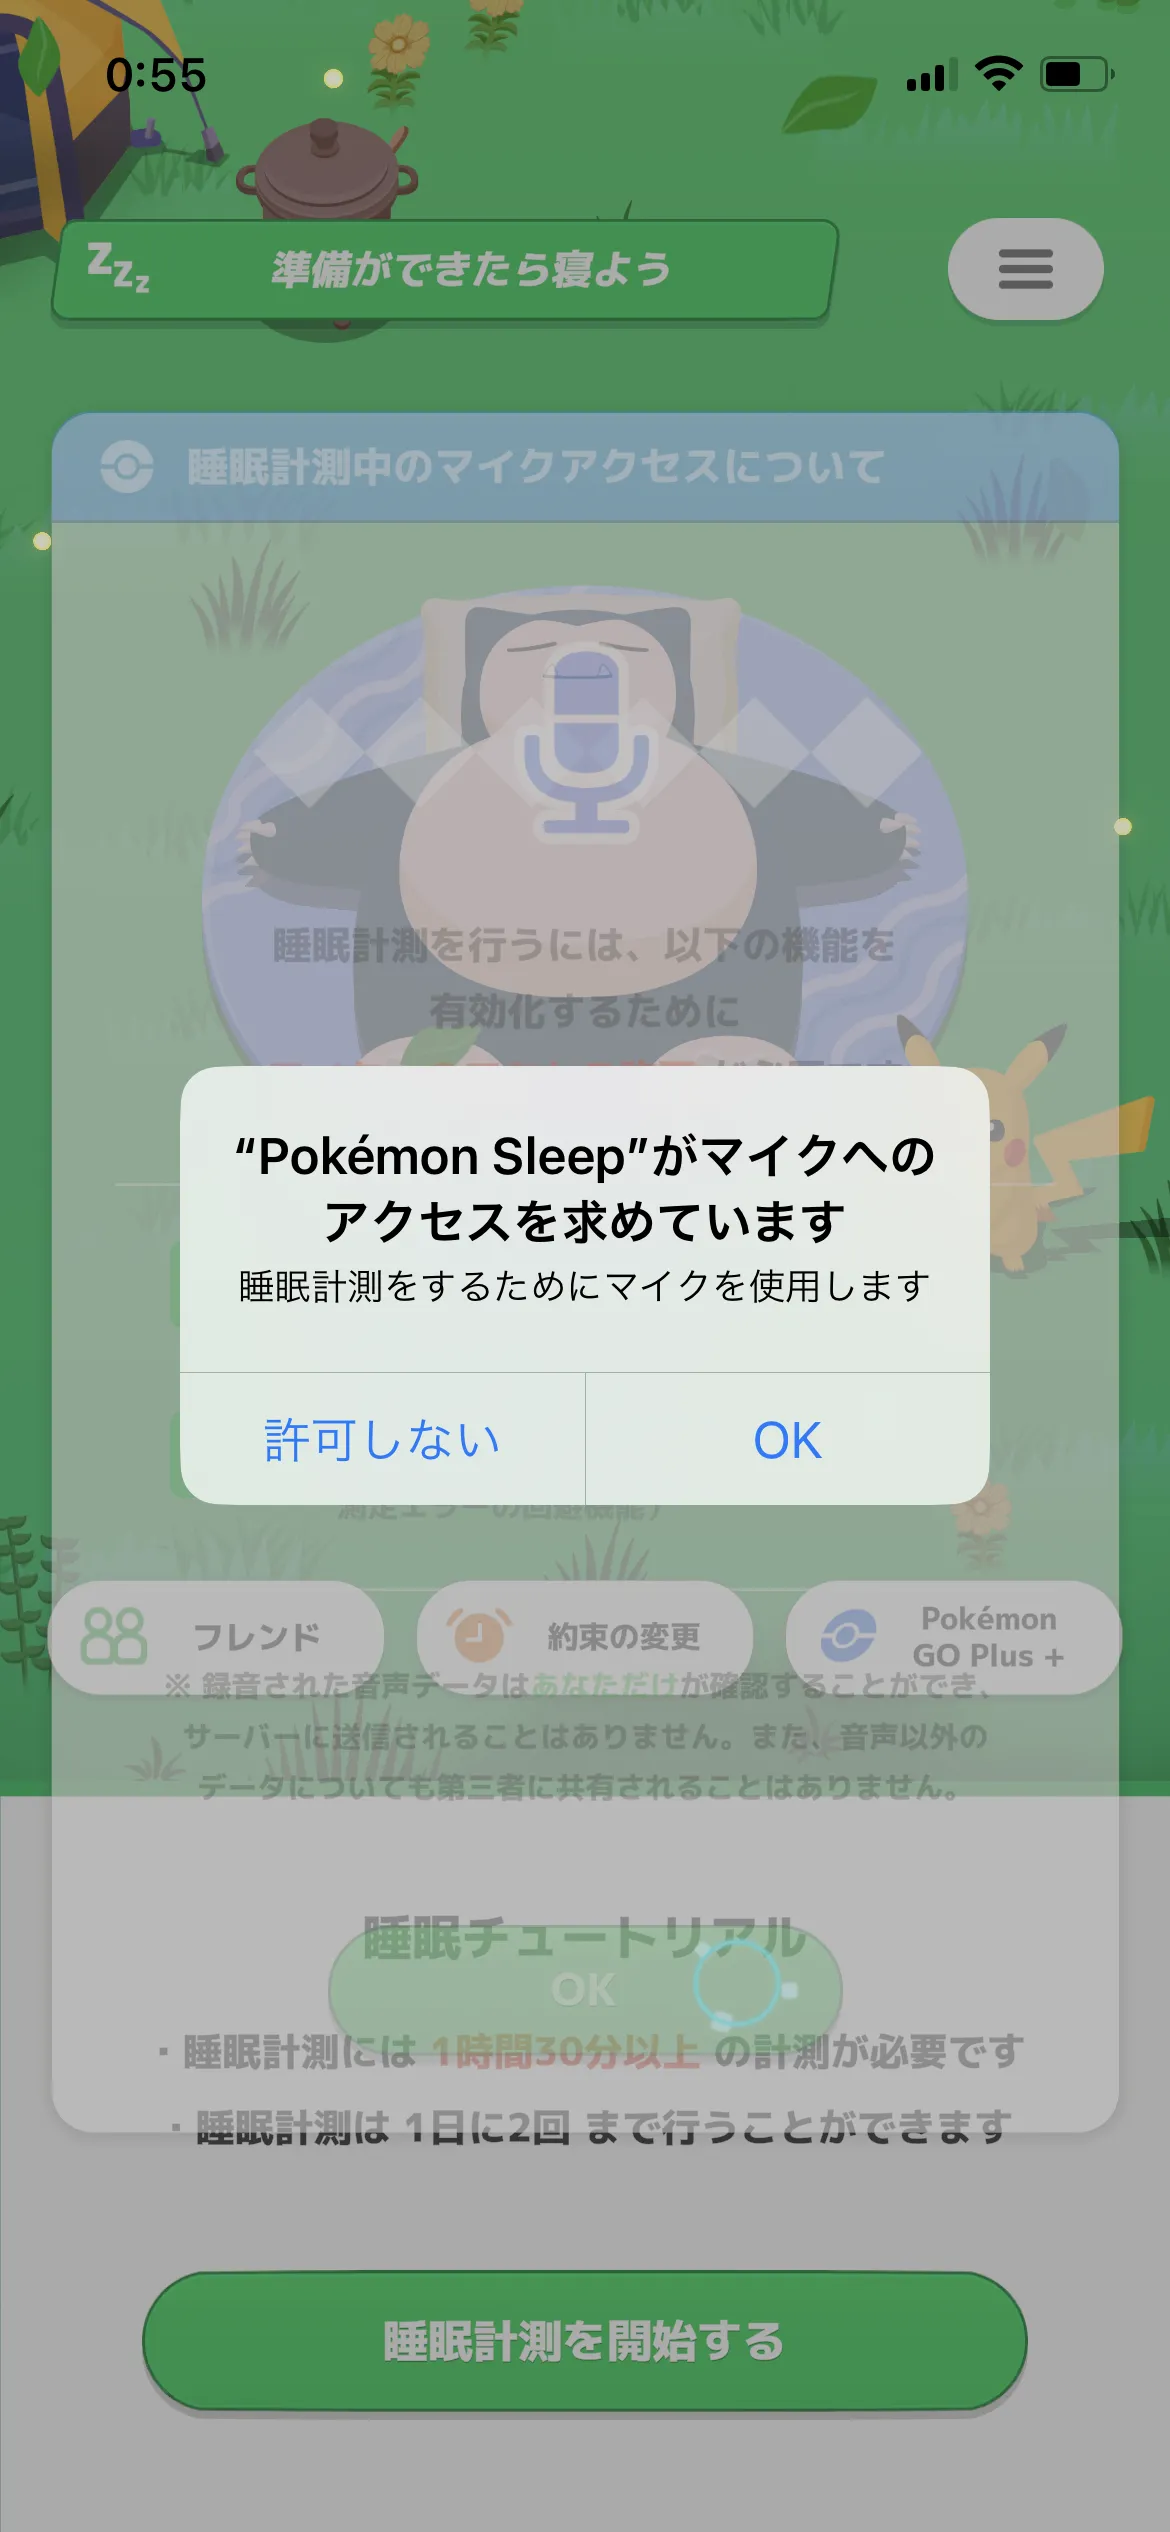 Pokémon Sleep チュートリアル screen